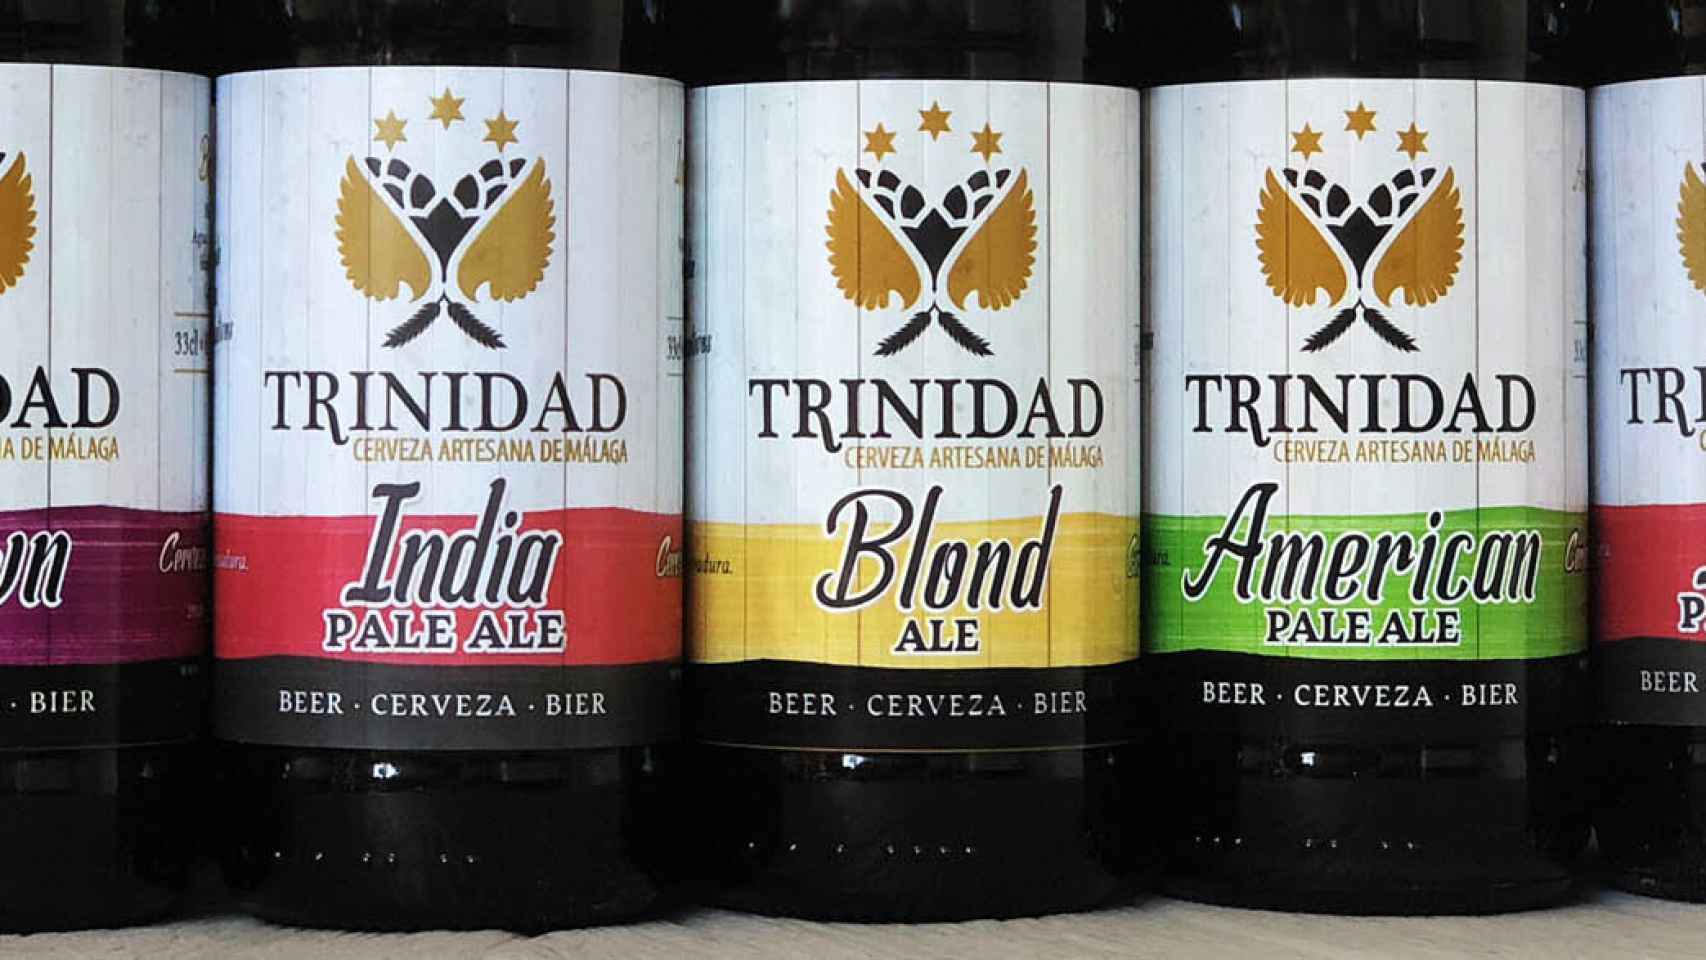 La cerveza Trinidad abarca la gran variedad de estilos que se espera de cualquier marca cervecera que se precie